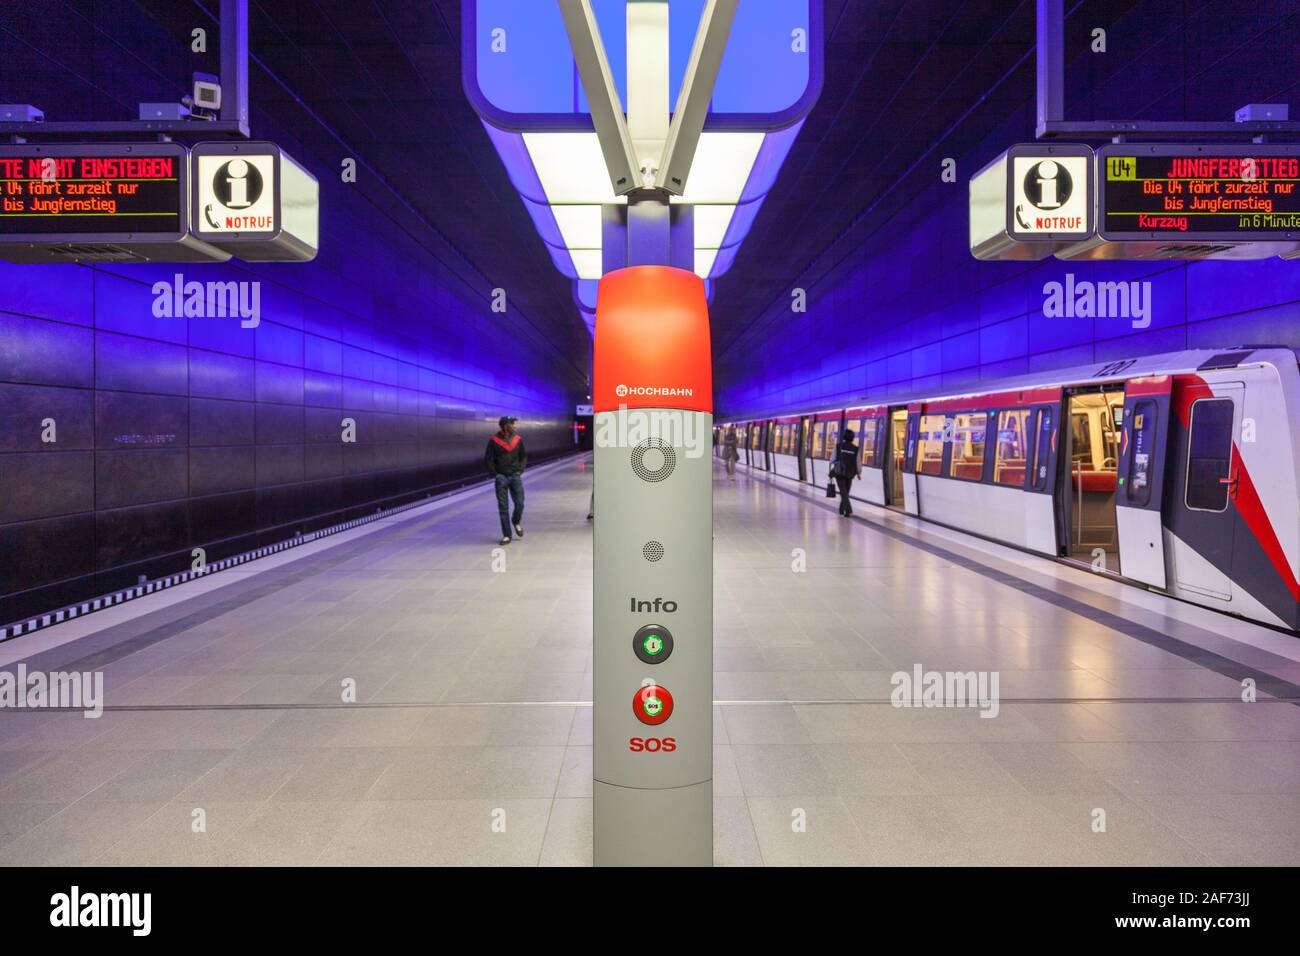 HafenCity University subway station, Hamburg, Germany Stock Photo